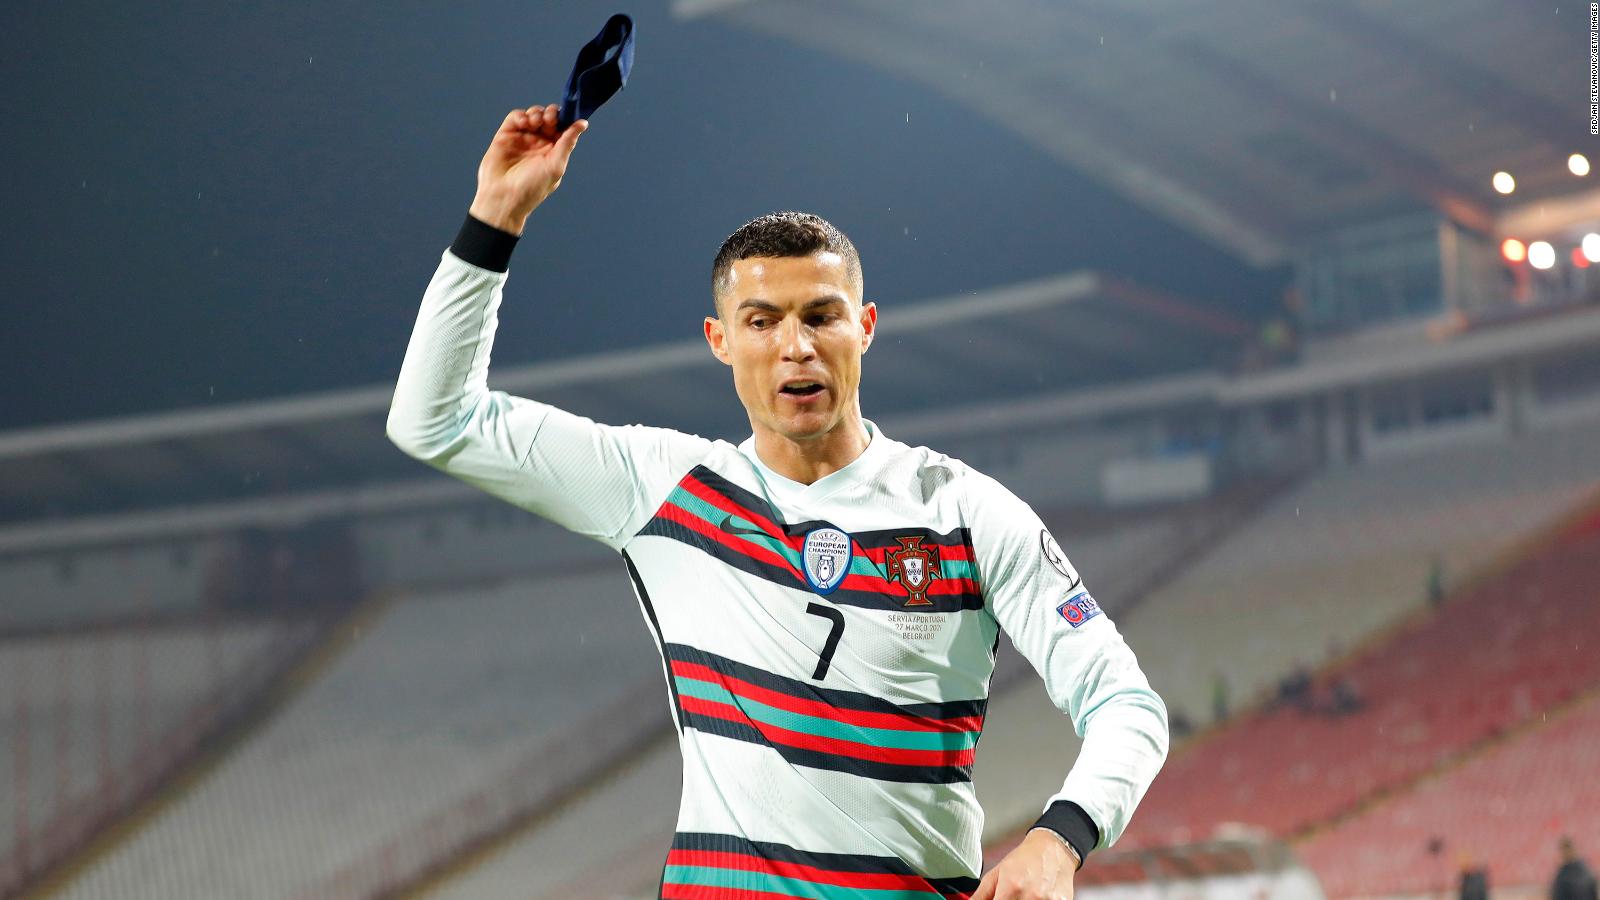 Banda de capitán Cristiano Ronaldo sirve como instrumento de caridad Video | CNN